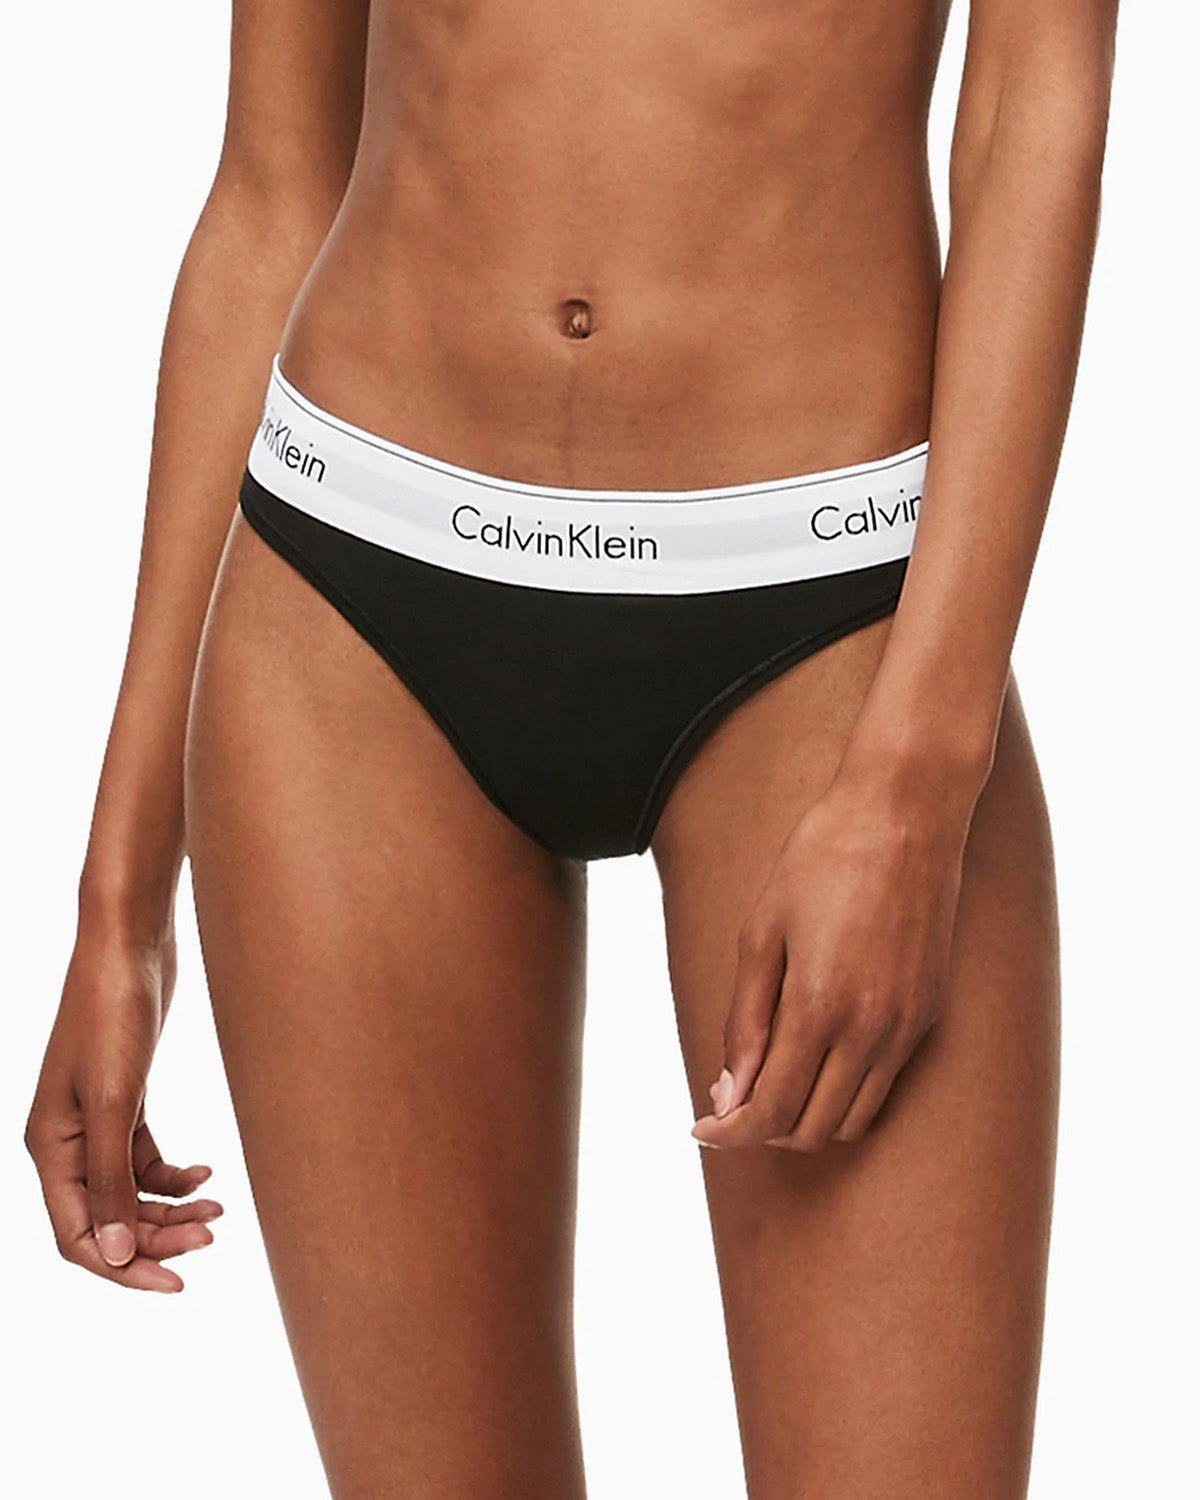 Calvin Klein Underwear Women's Modern Cotton Bikini Briefs, Black